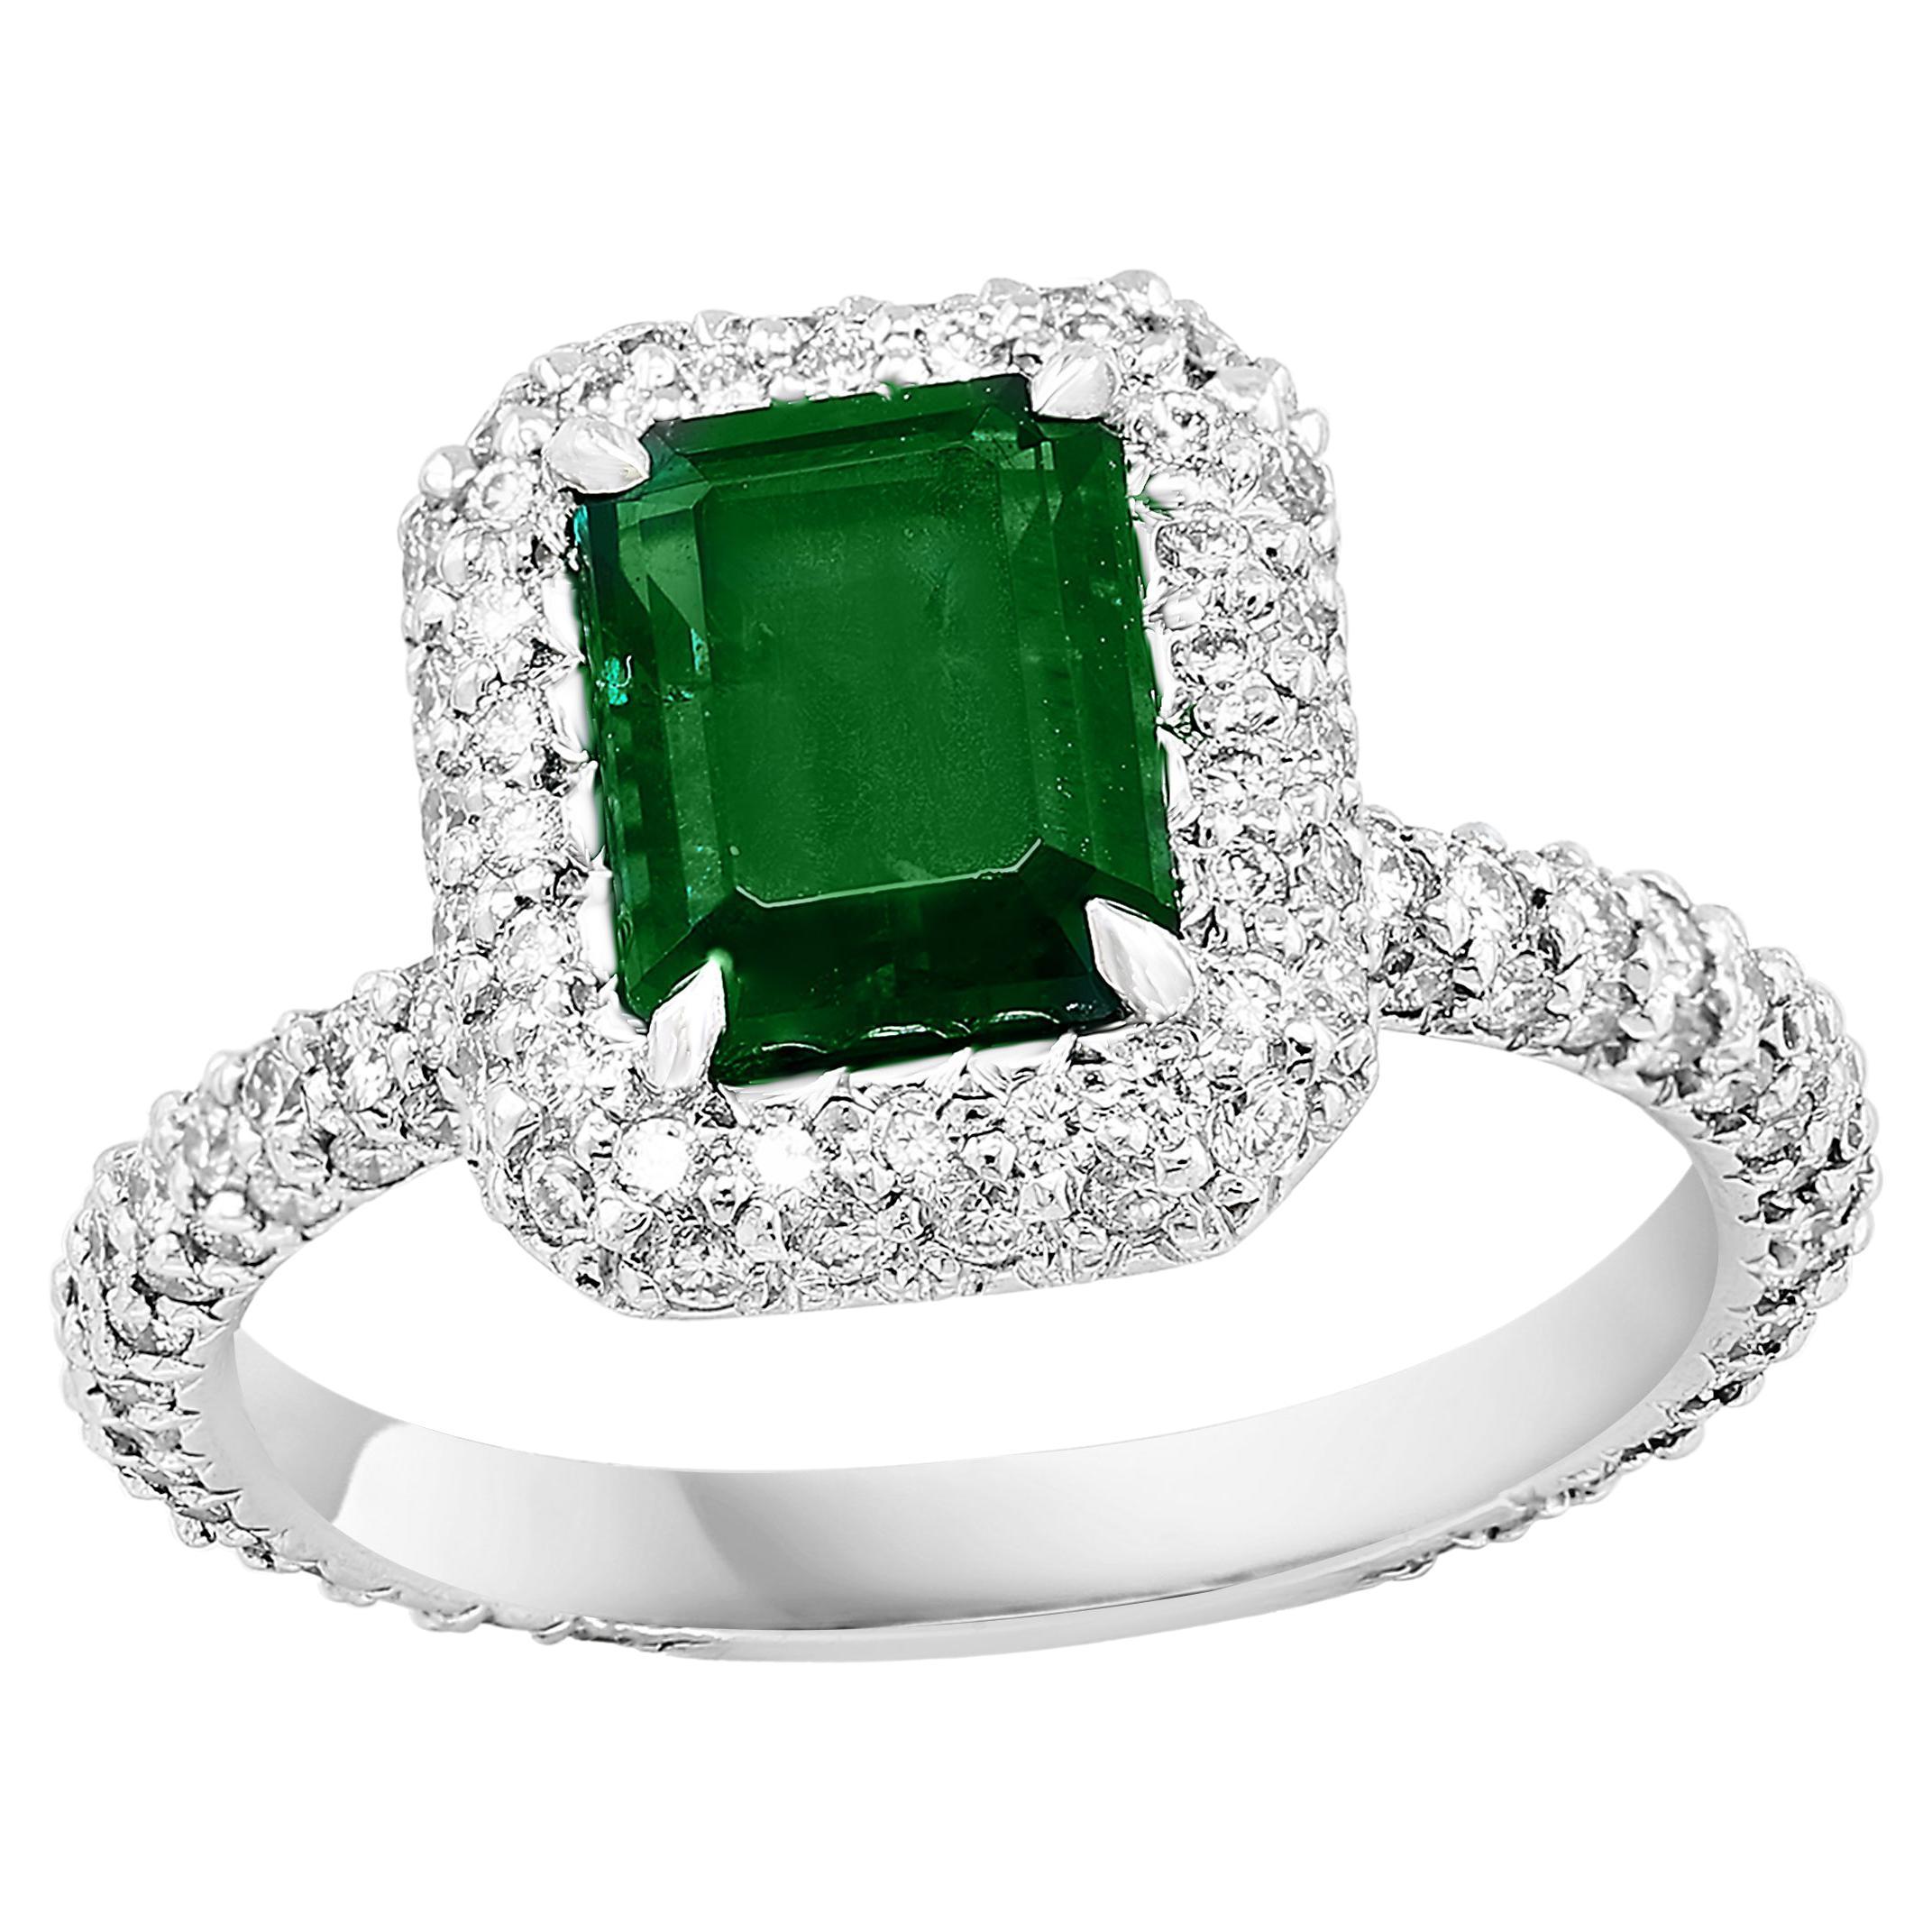 1.60 Carat Emerald Cut Emerald and Diamond Engagement Ring in Platinum